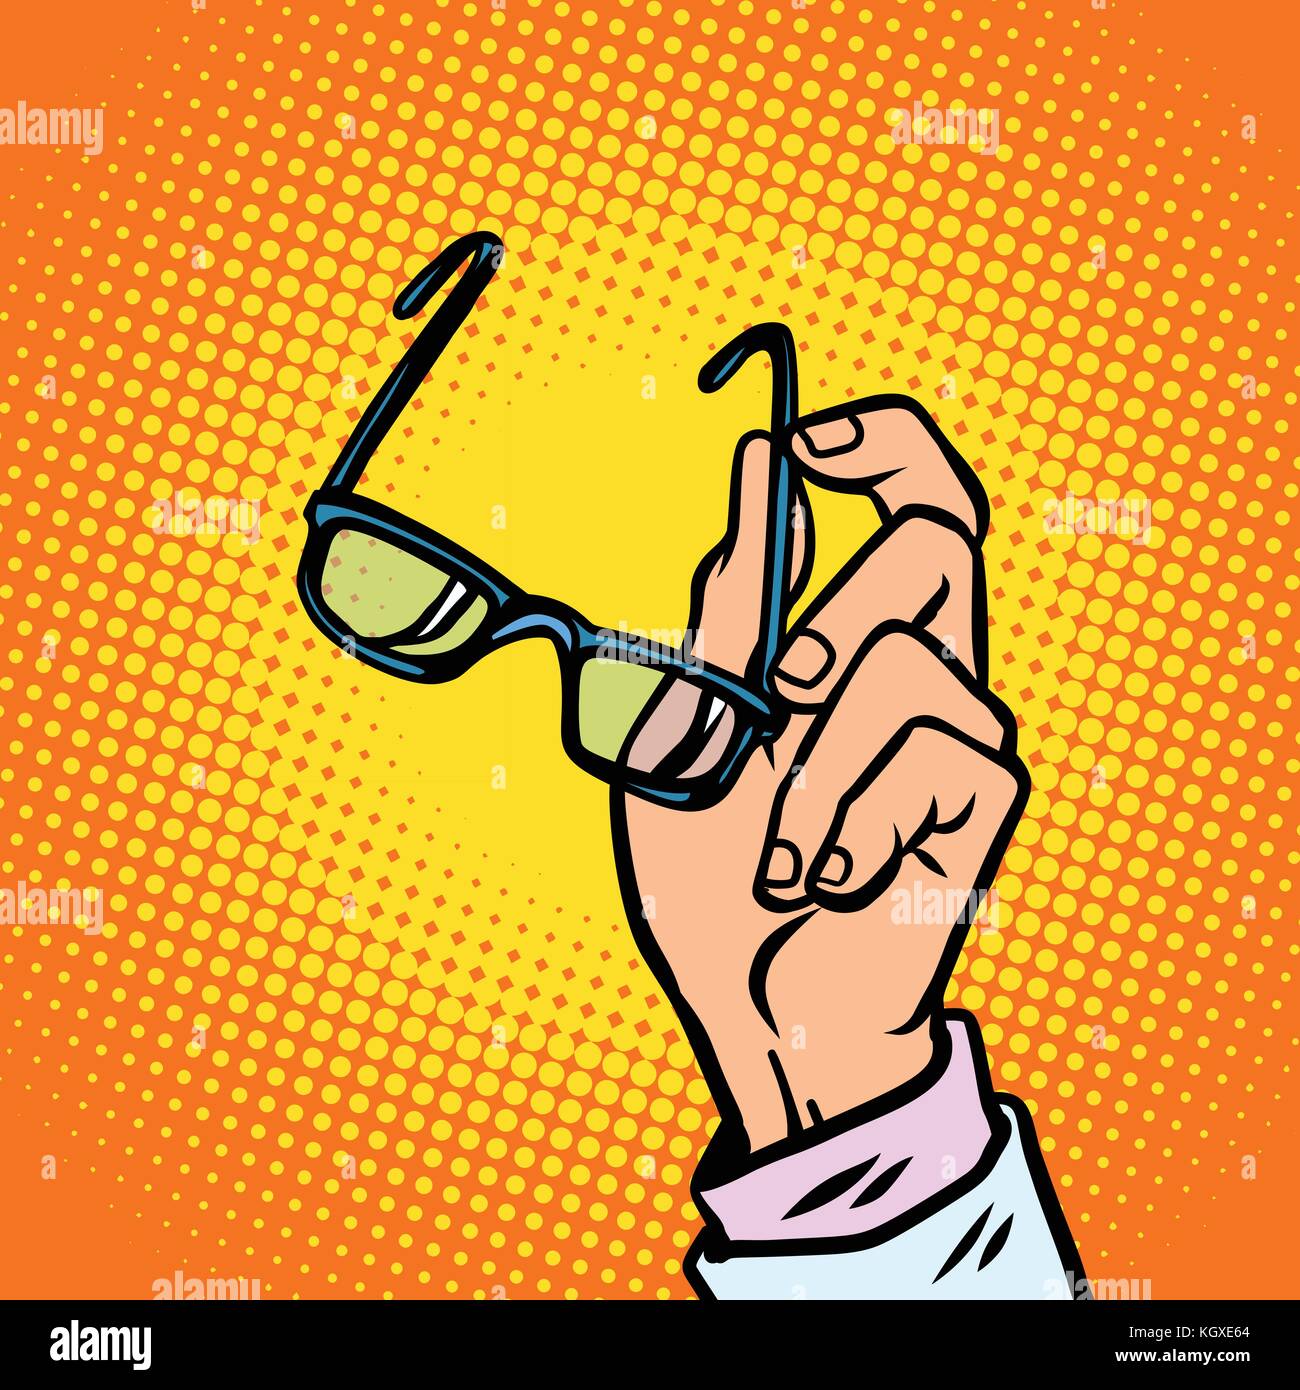 Bicchieri in mano, visione e persone. fumetto cartoon arte pop retrò illustrazione vettoriale disegno Illustrazione Vettoriale